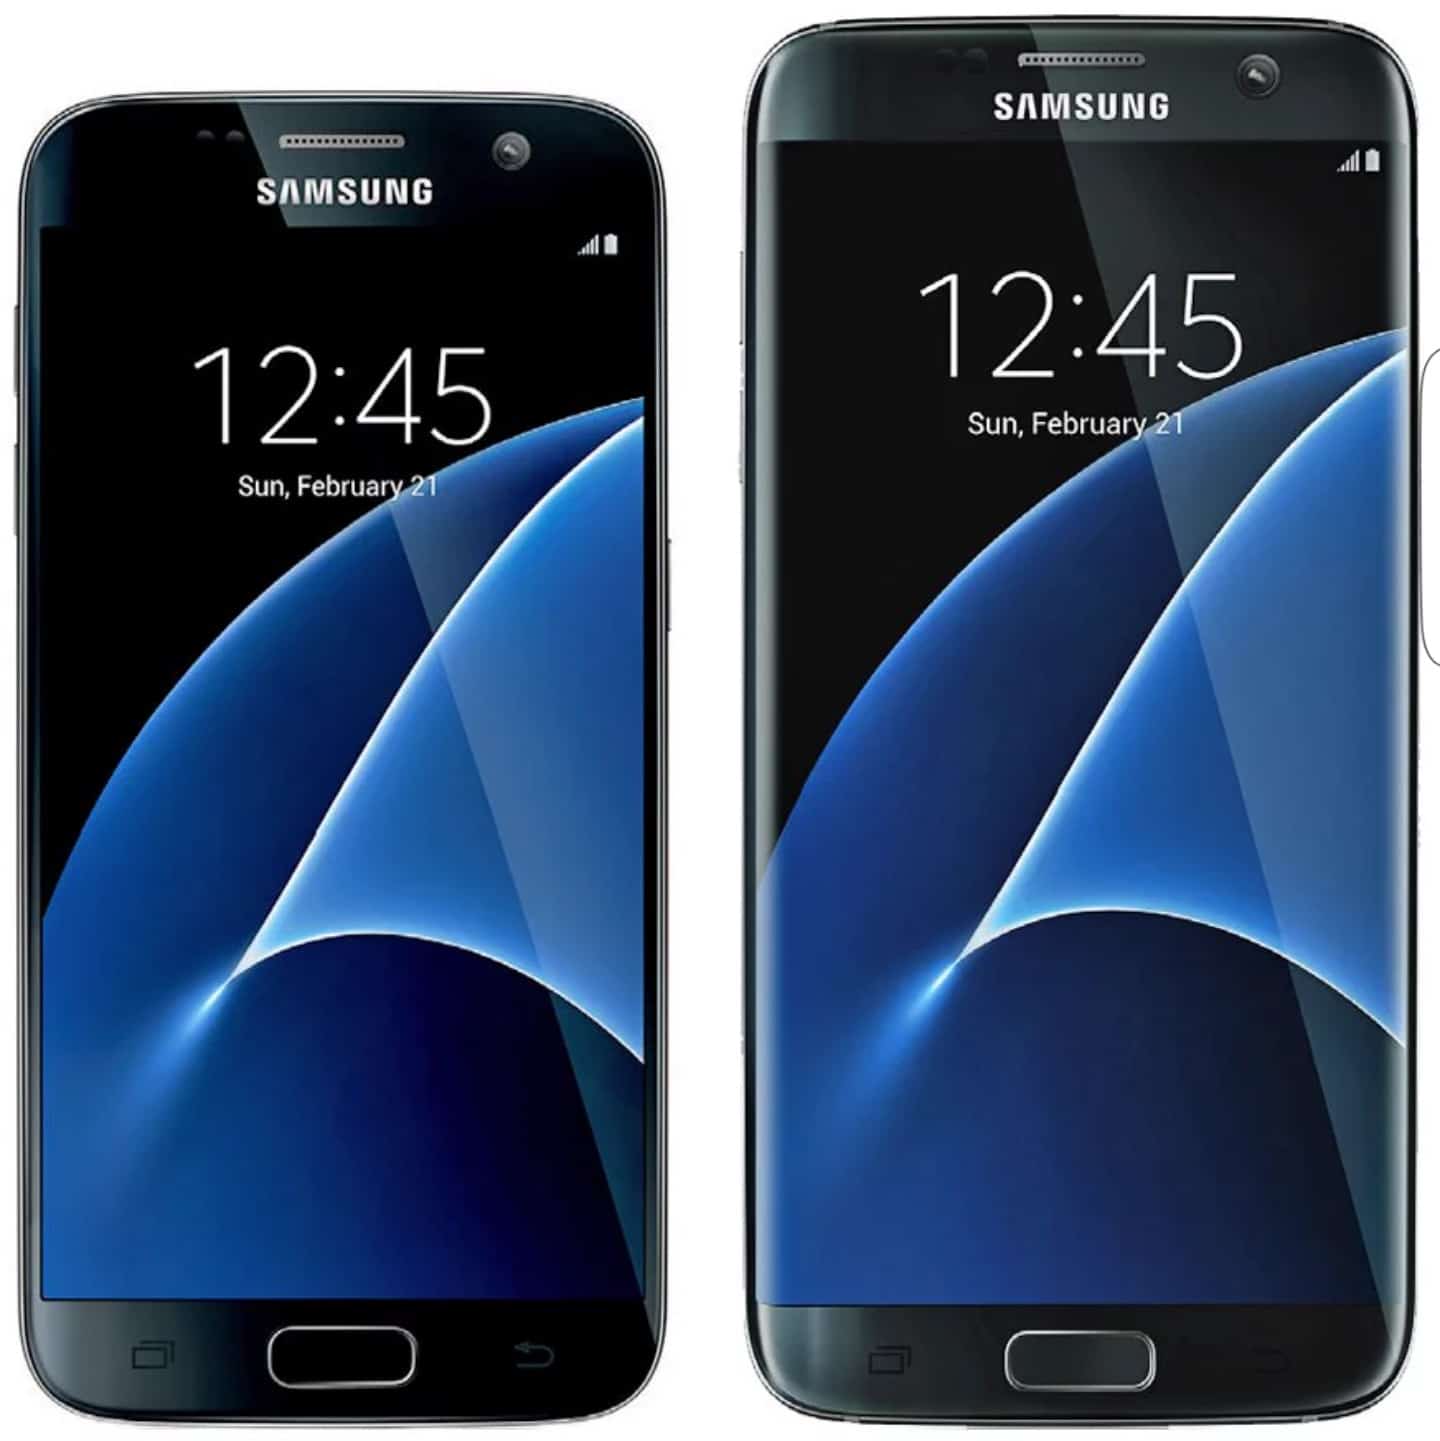 Afname Score Opgewonden zijn Rus doet boekje open over Samsung Galaxy S7: camera, accu, prijs, geen  USB-C (update: en IP68) - Galaxy Club - dé onafhankelijke Samsung experts